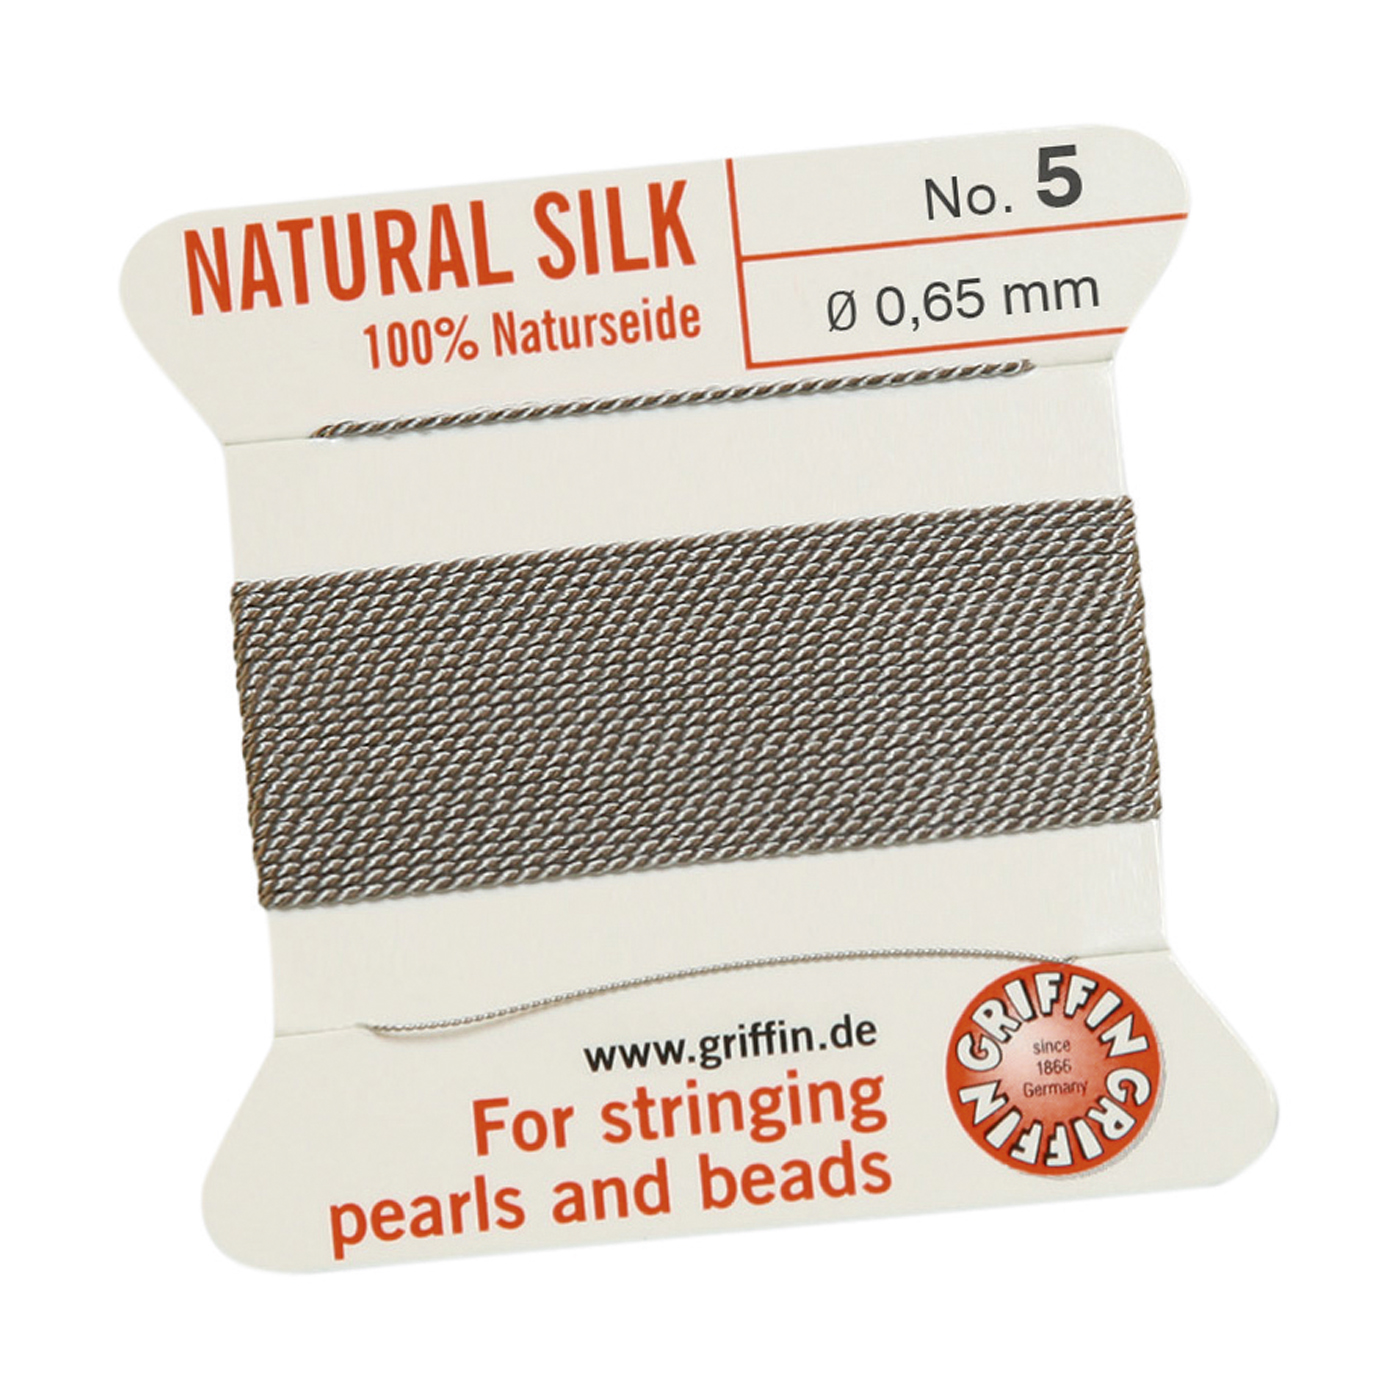 Bead Cord 100% Natural Silk, Grey, No. 5 - 2 m